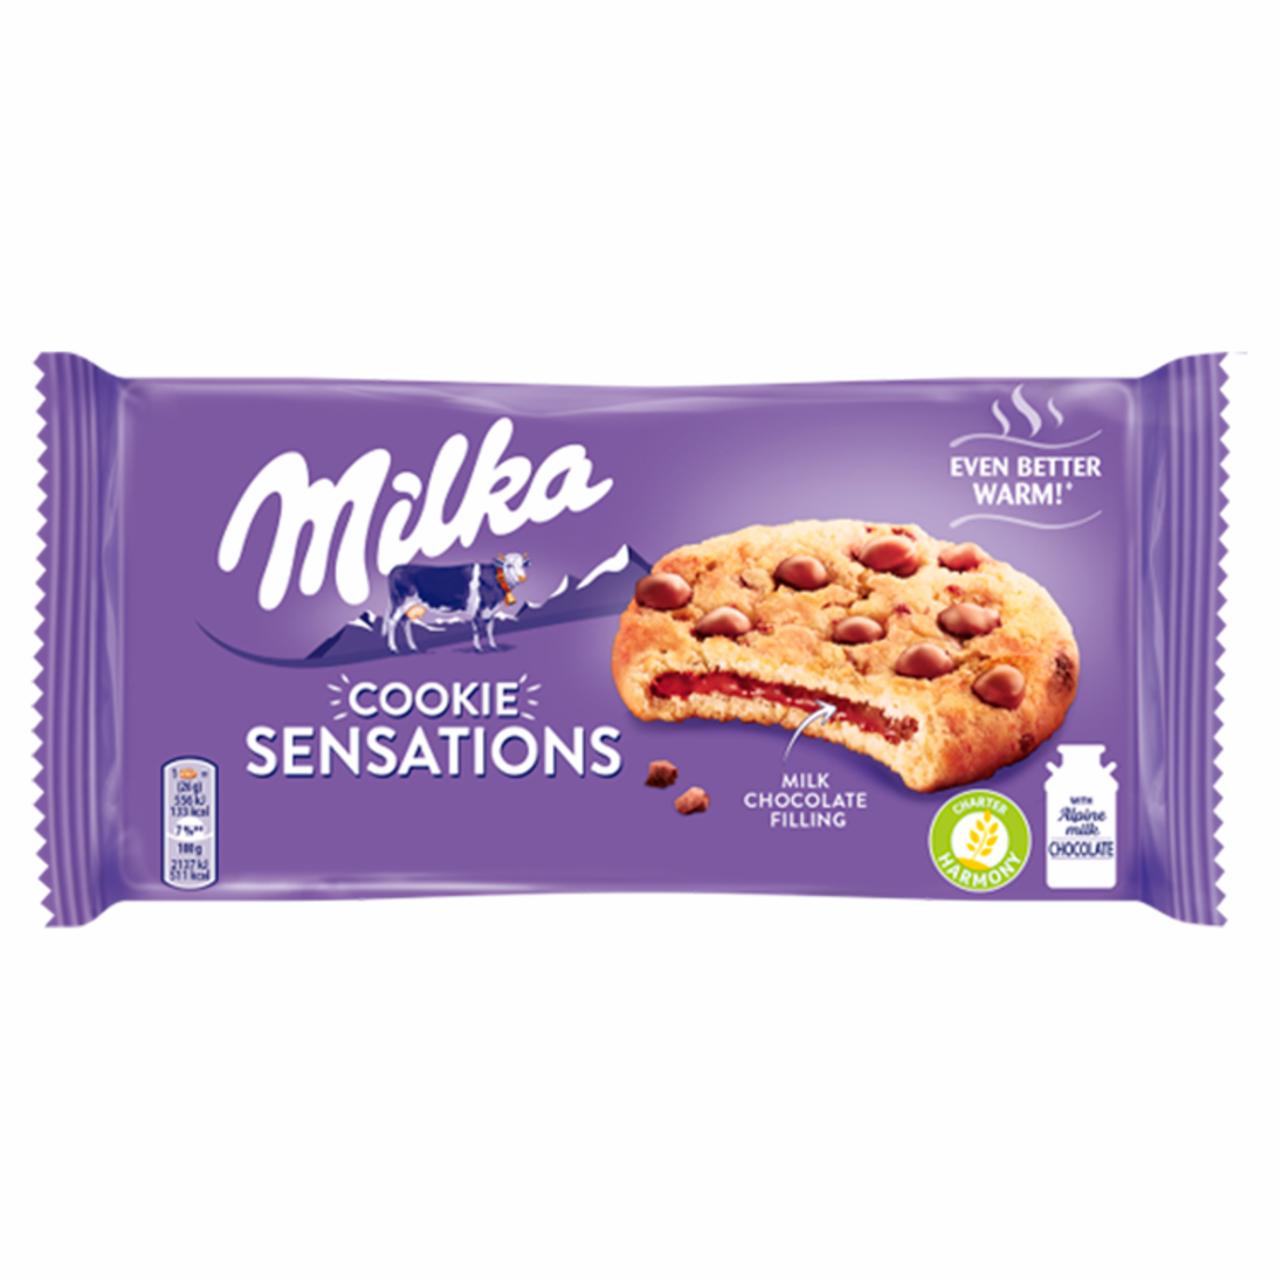 Zdjęcia - Sensations Cookies Ciastka z kawałkami czekolady i nadzieniem z czekoladą mleczną Milka